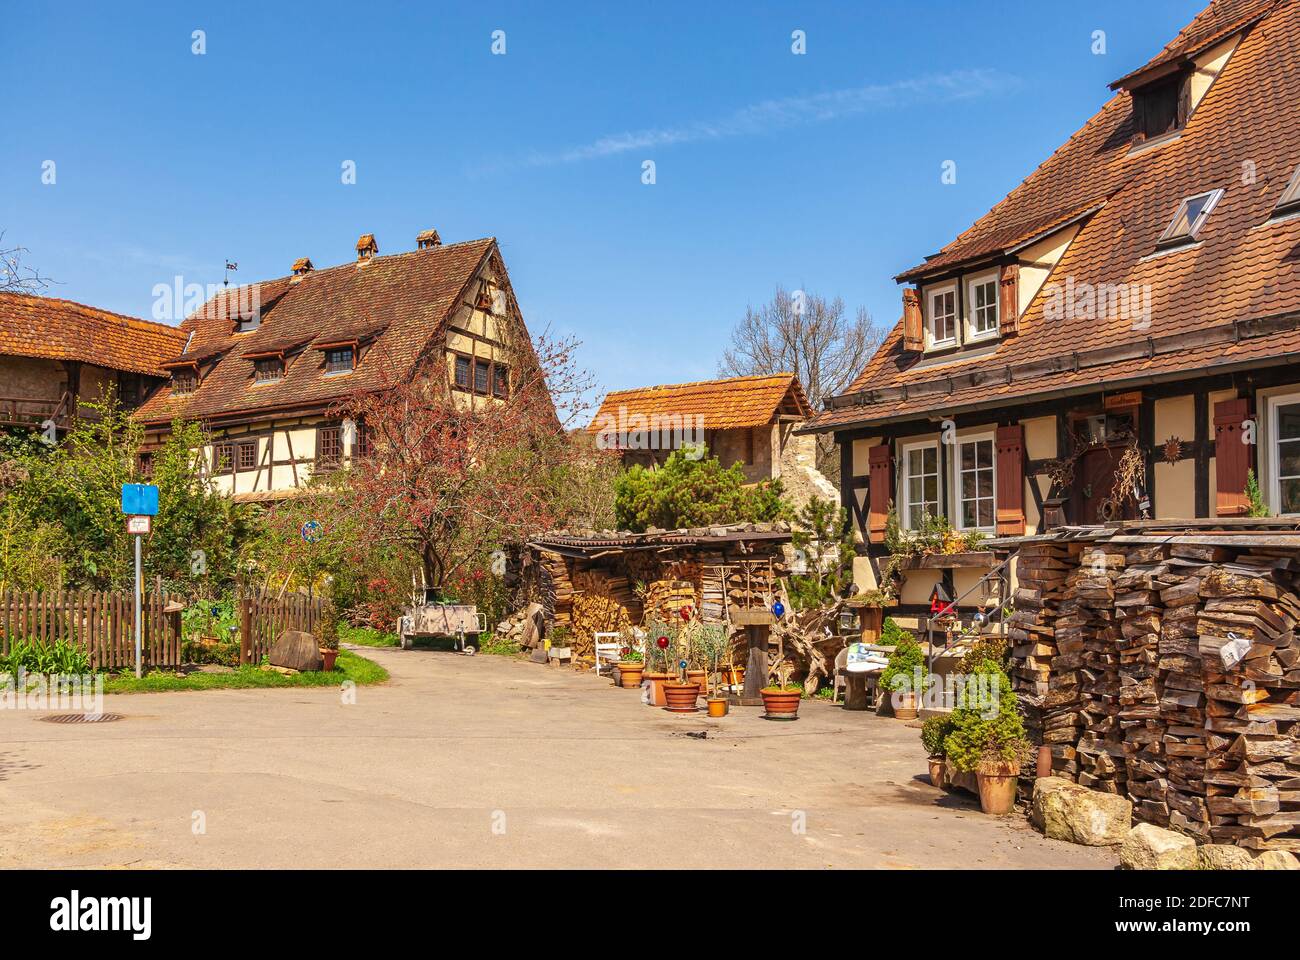 Impressioni sul villaggio e il complesso del palazzo e del monastero di Bebenhausen vicino a Tübingen, Baden-Württemberg, Germania. Foto Stock